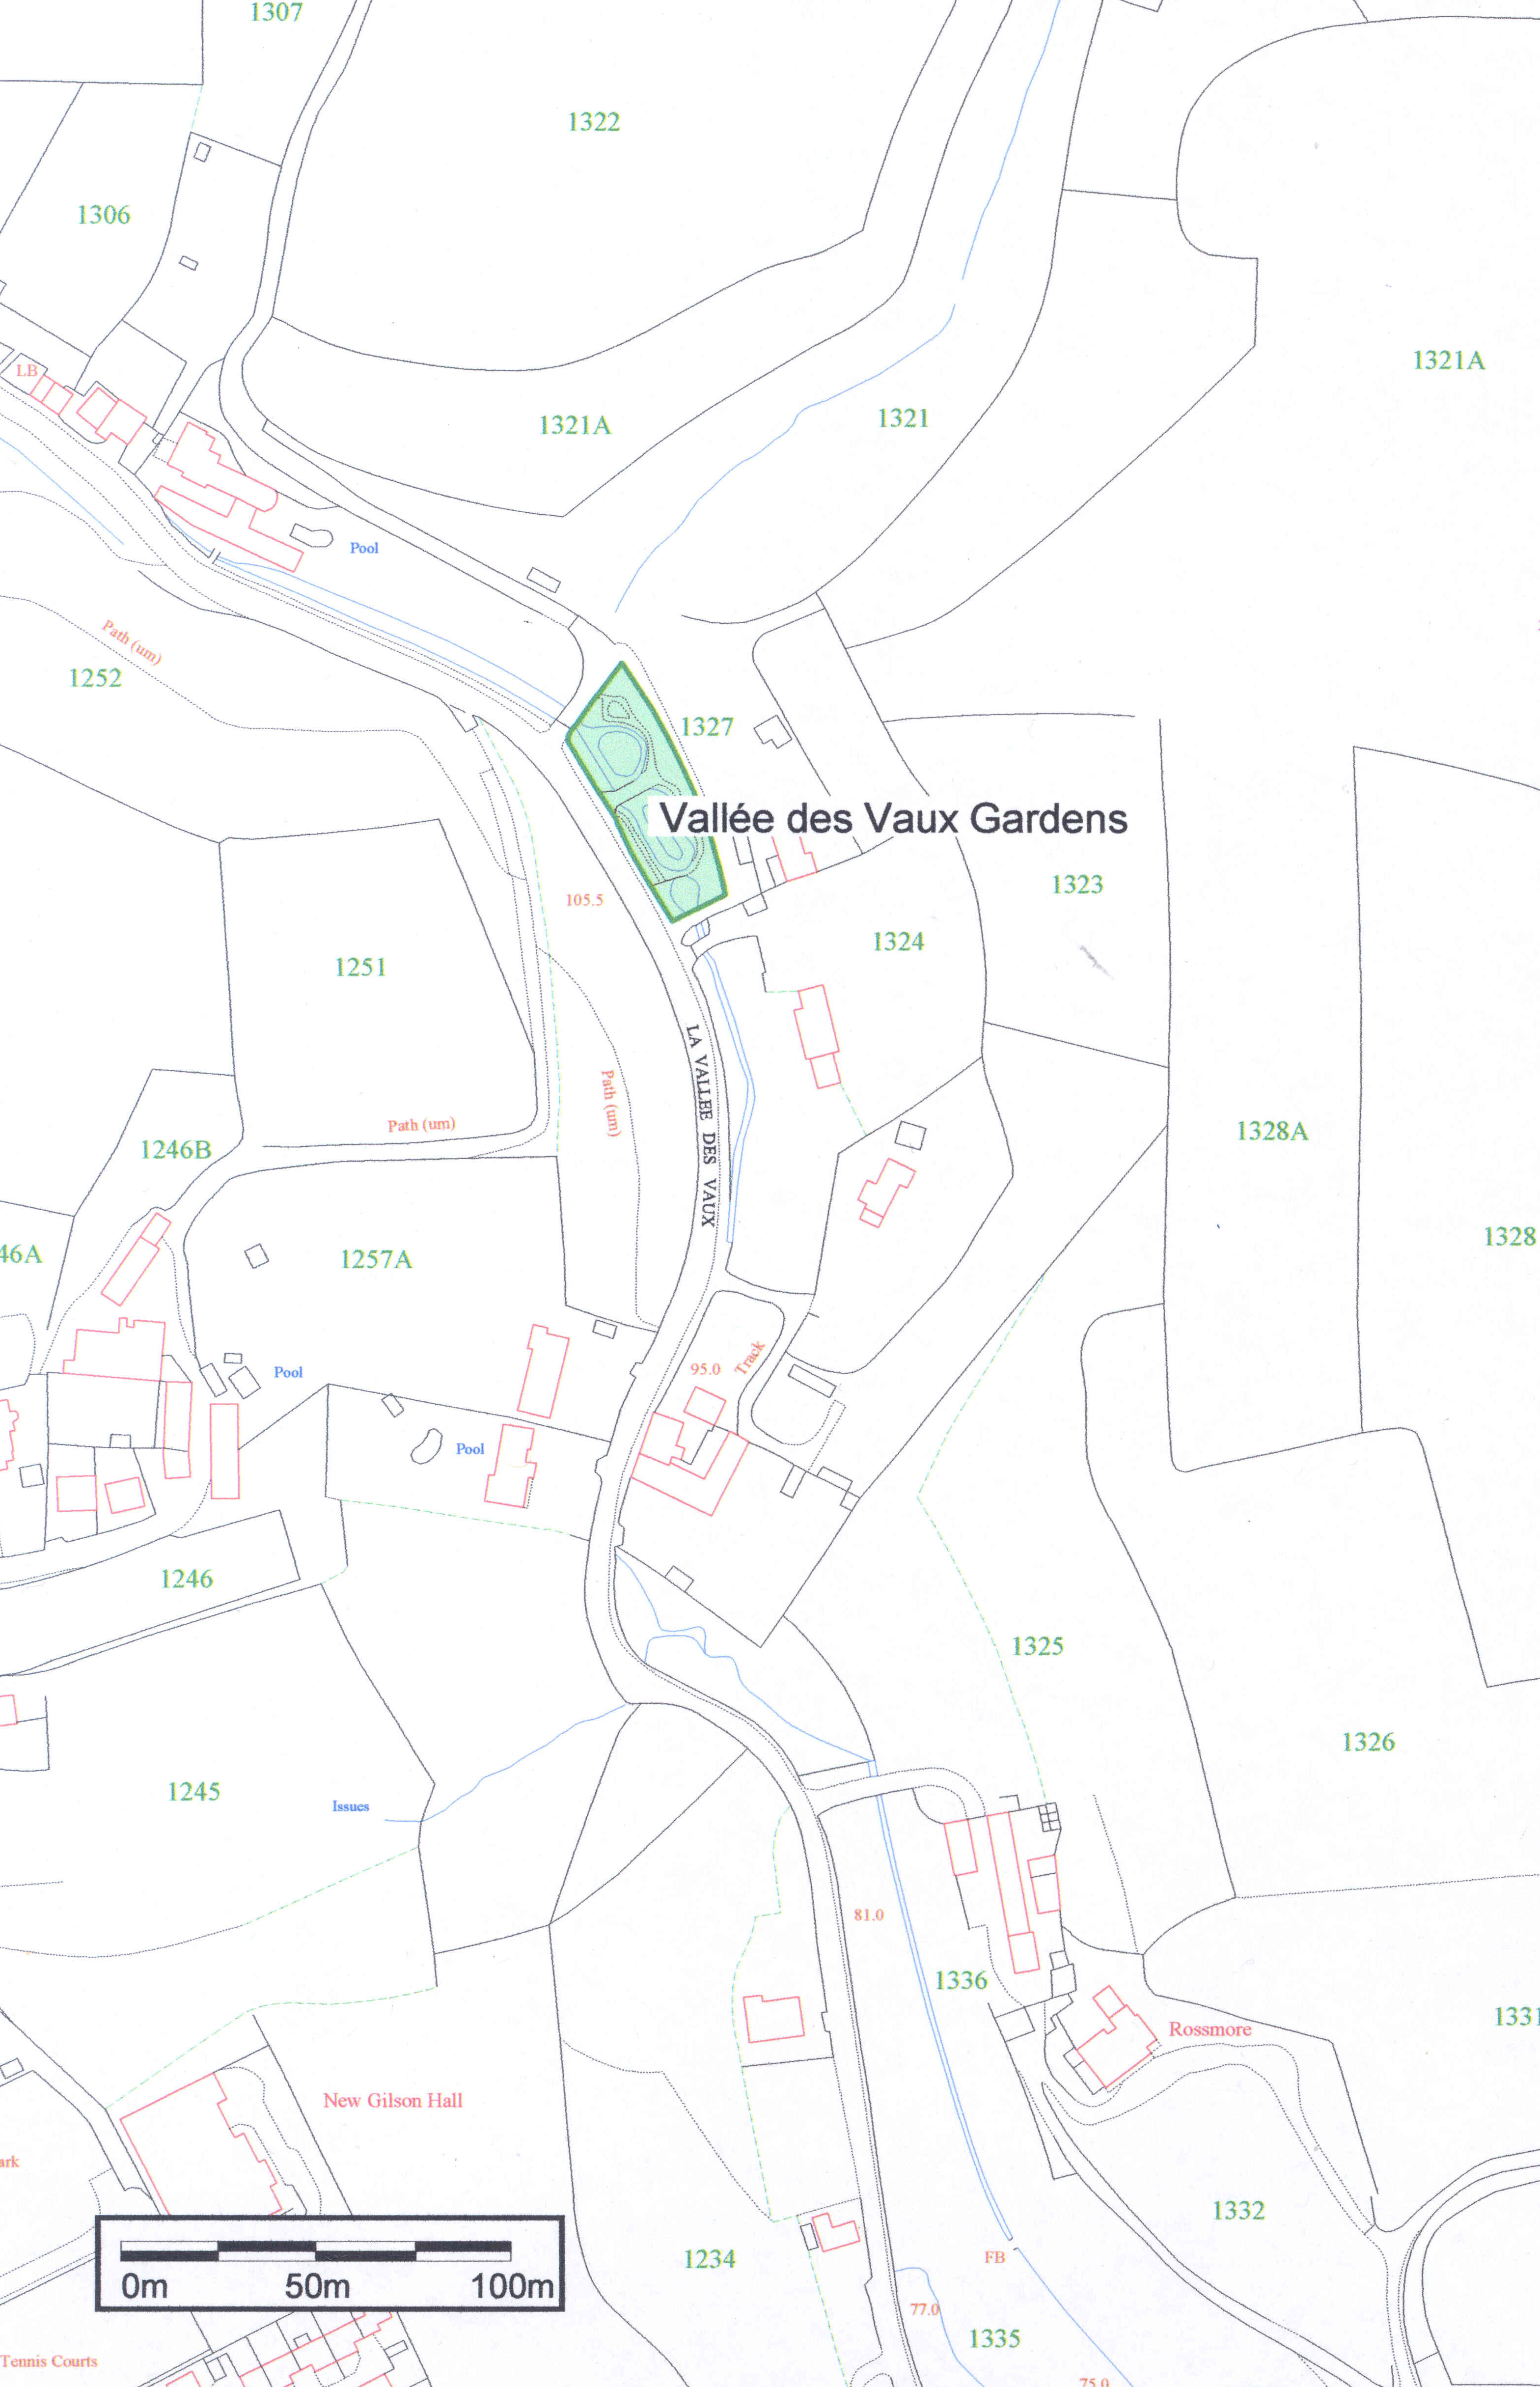 Part 1 - map of Vallee des Vaux Gardens